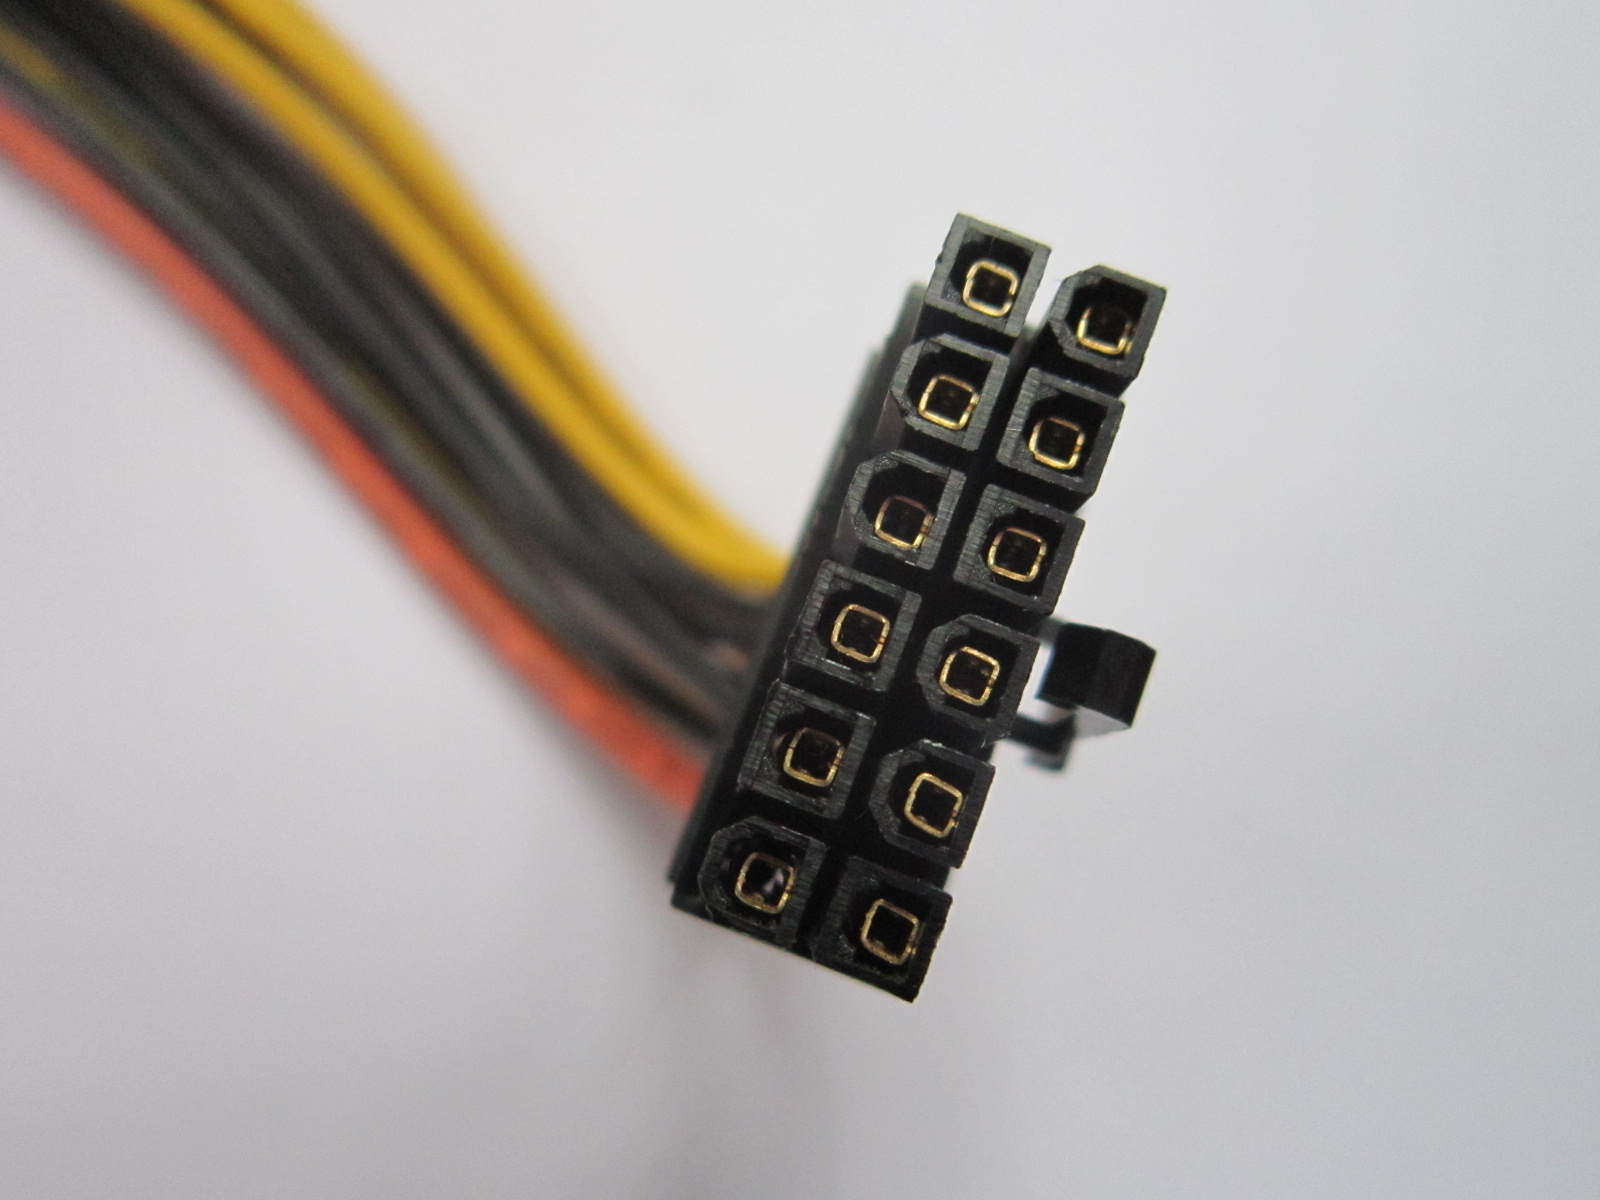 Avalon-modular-power-cable-head.JPG